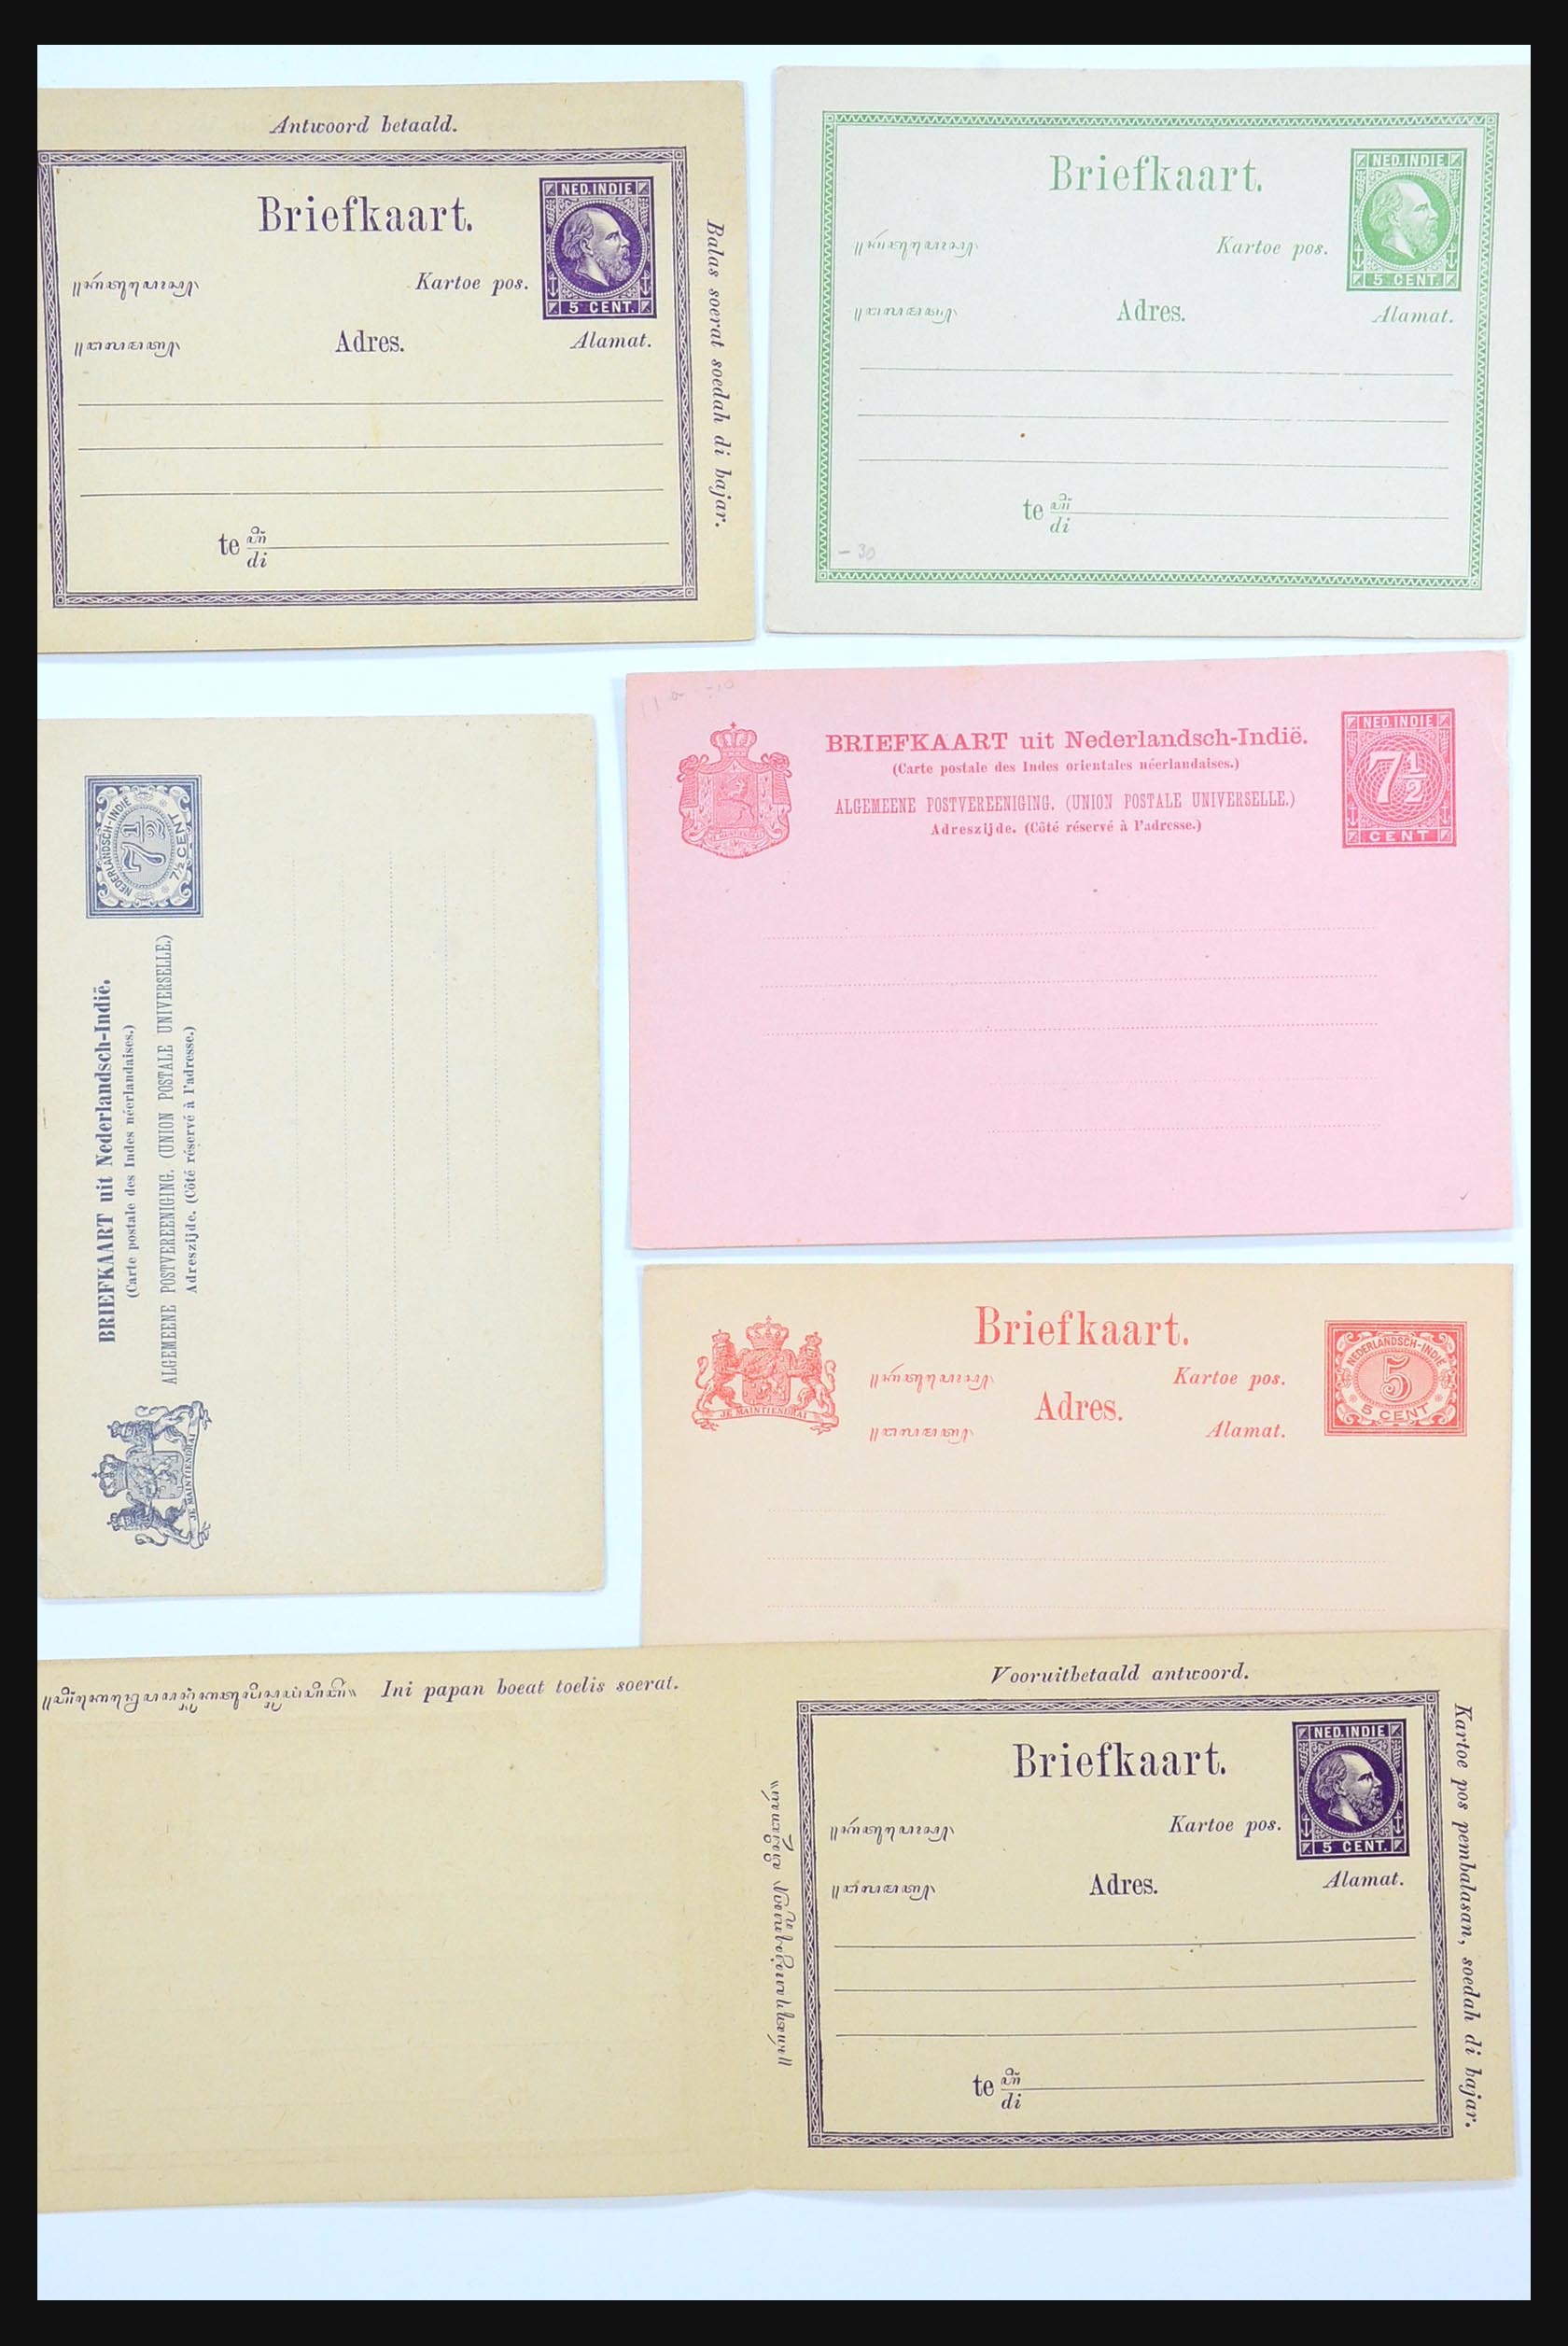 31361 001 - 31361 Nederlands Indië brieven 1880-1950.